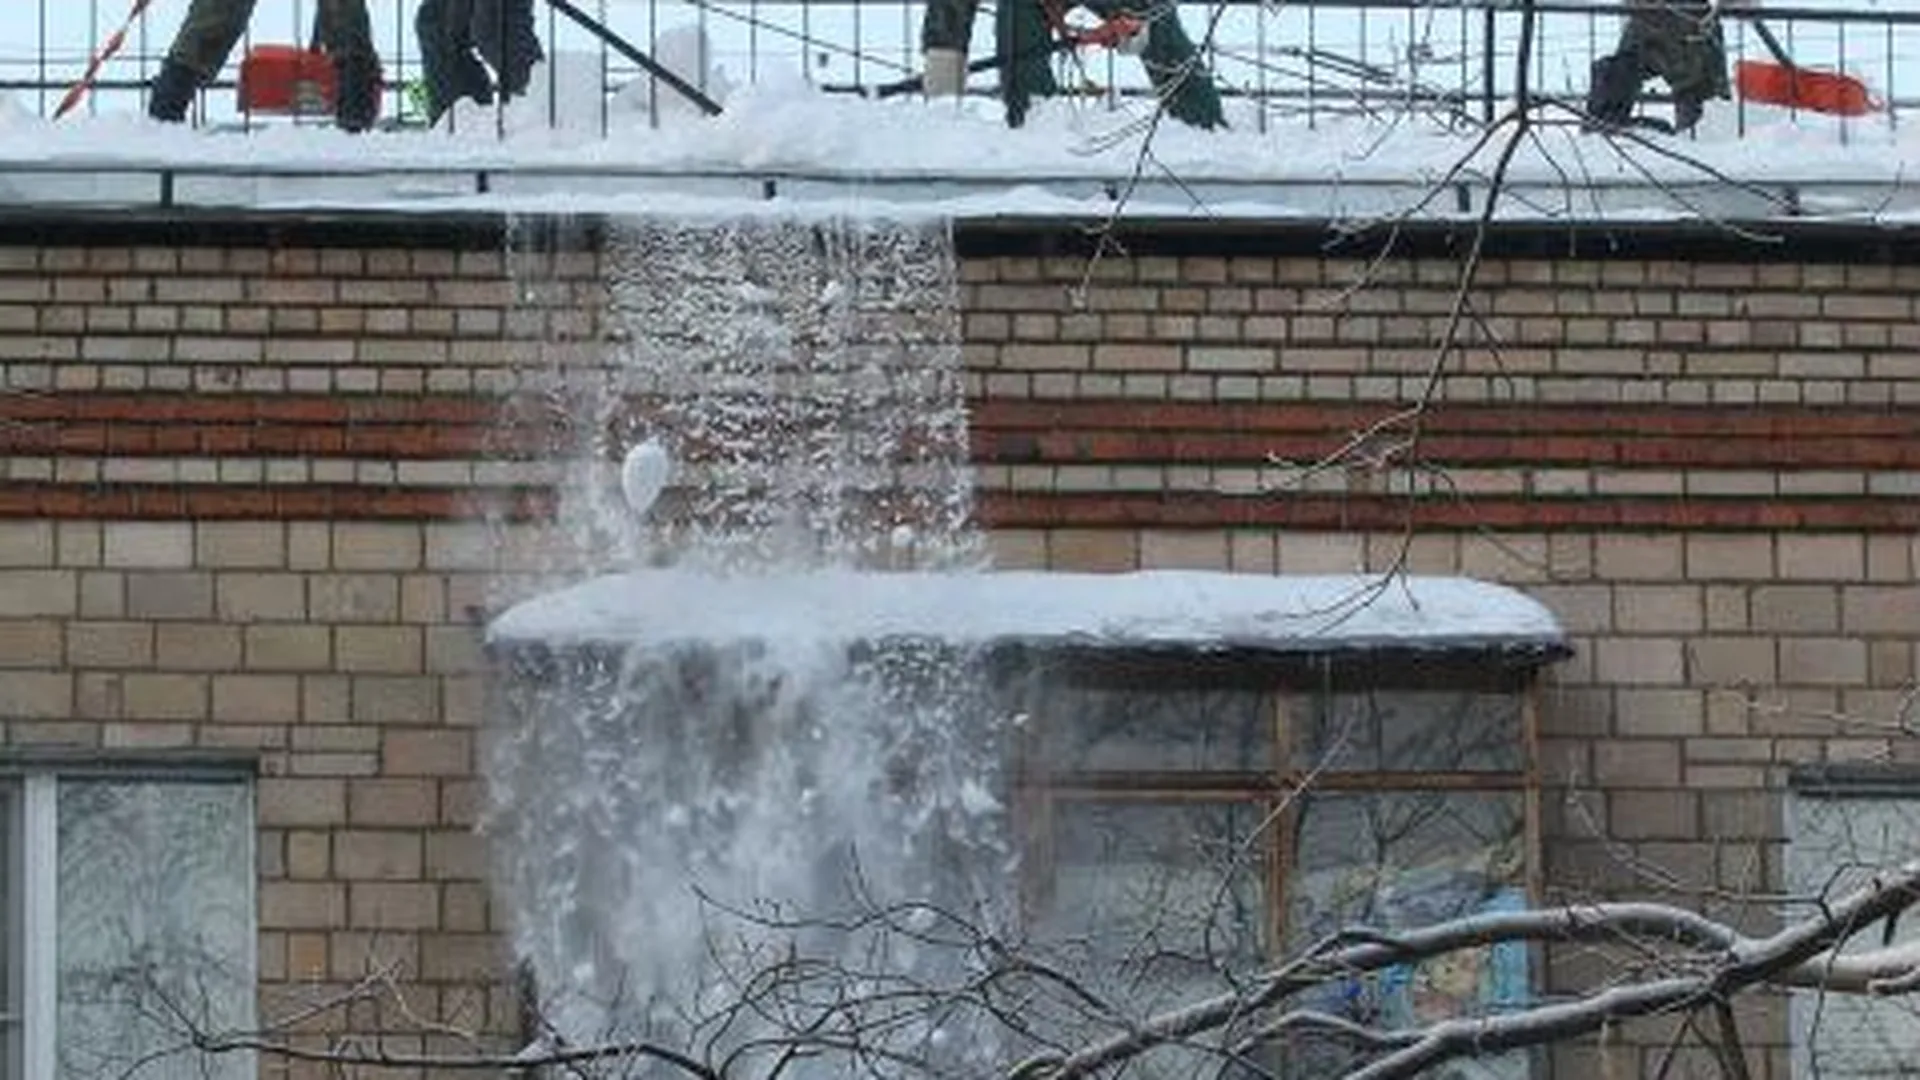 Балкон в Чехове, обрушившийся из-за снега, отремонтируют за 10 дней